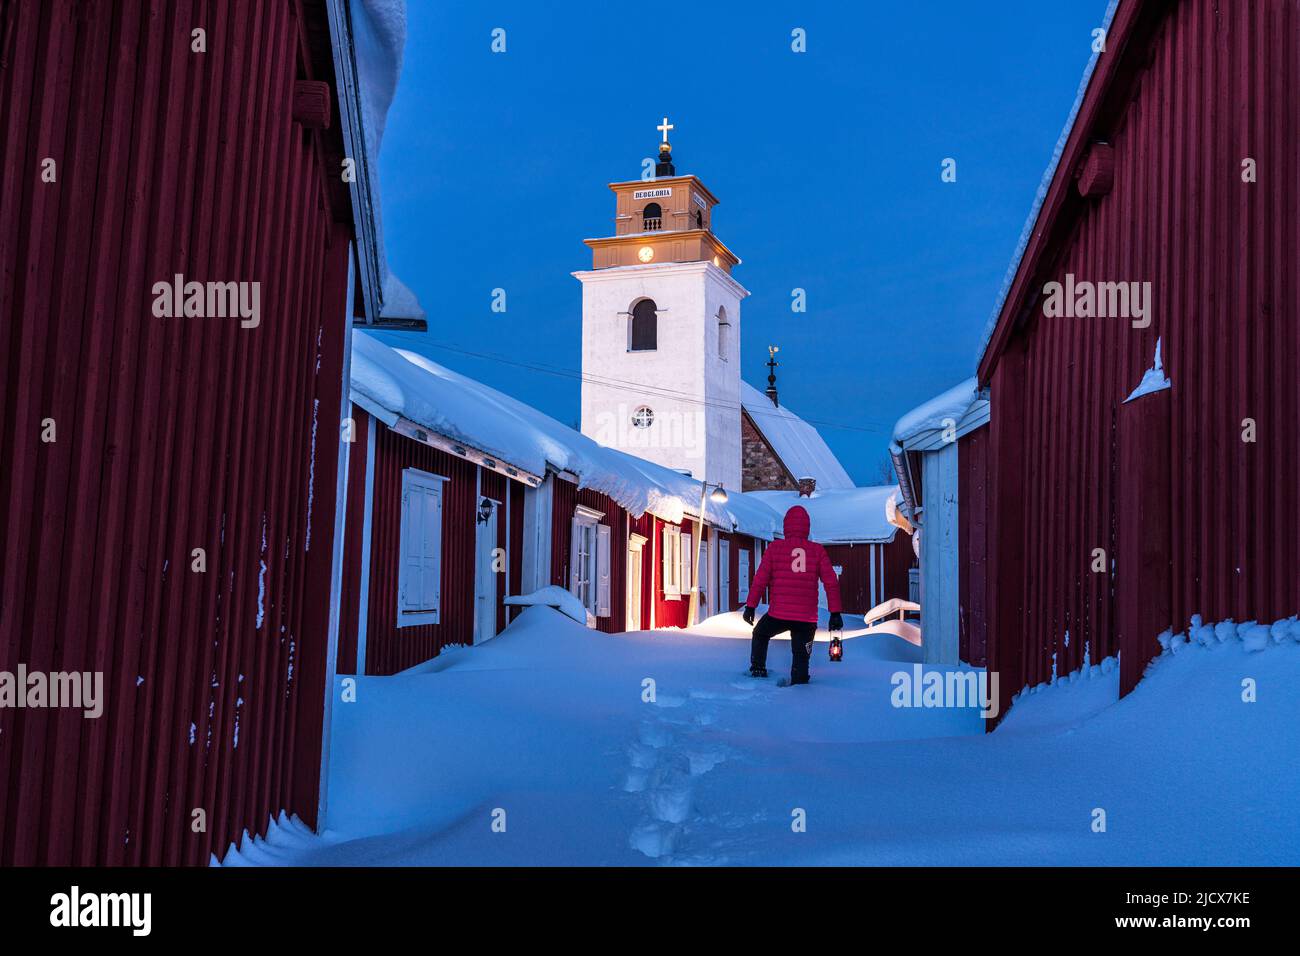 Personne admirant le clocher debout dans la neige profonde au milieu des chalets rouges au crépuscule, ville de l'église de Gammelstad, site classé au patrimoine mondial de l'UNESCO, Lulea, Suède Banque D'Images